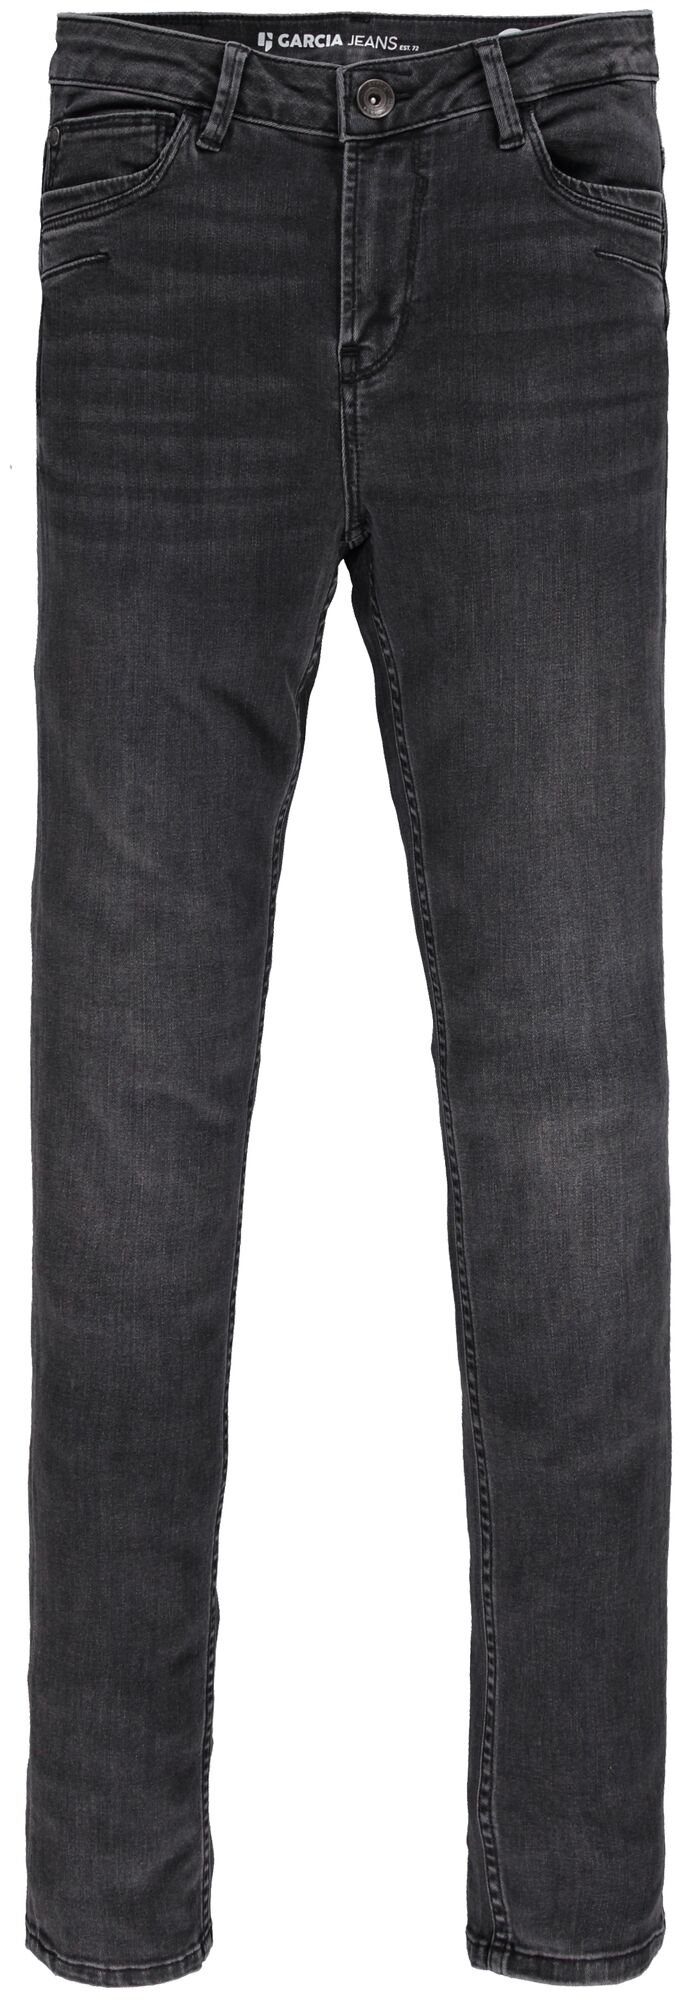 GARCIA JEANS Stretch-Jeans GARCIA CELIA grey medium used 244.9350